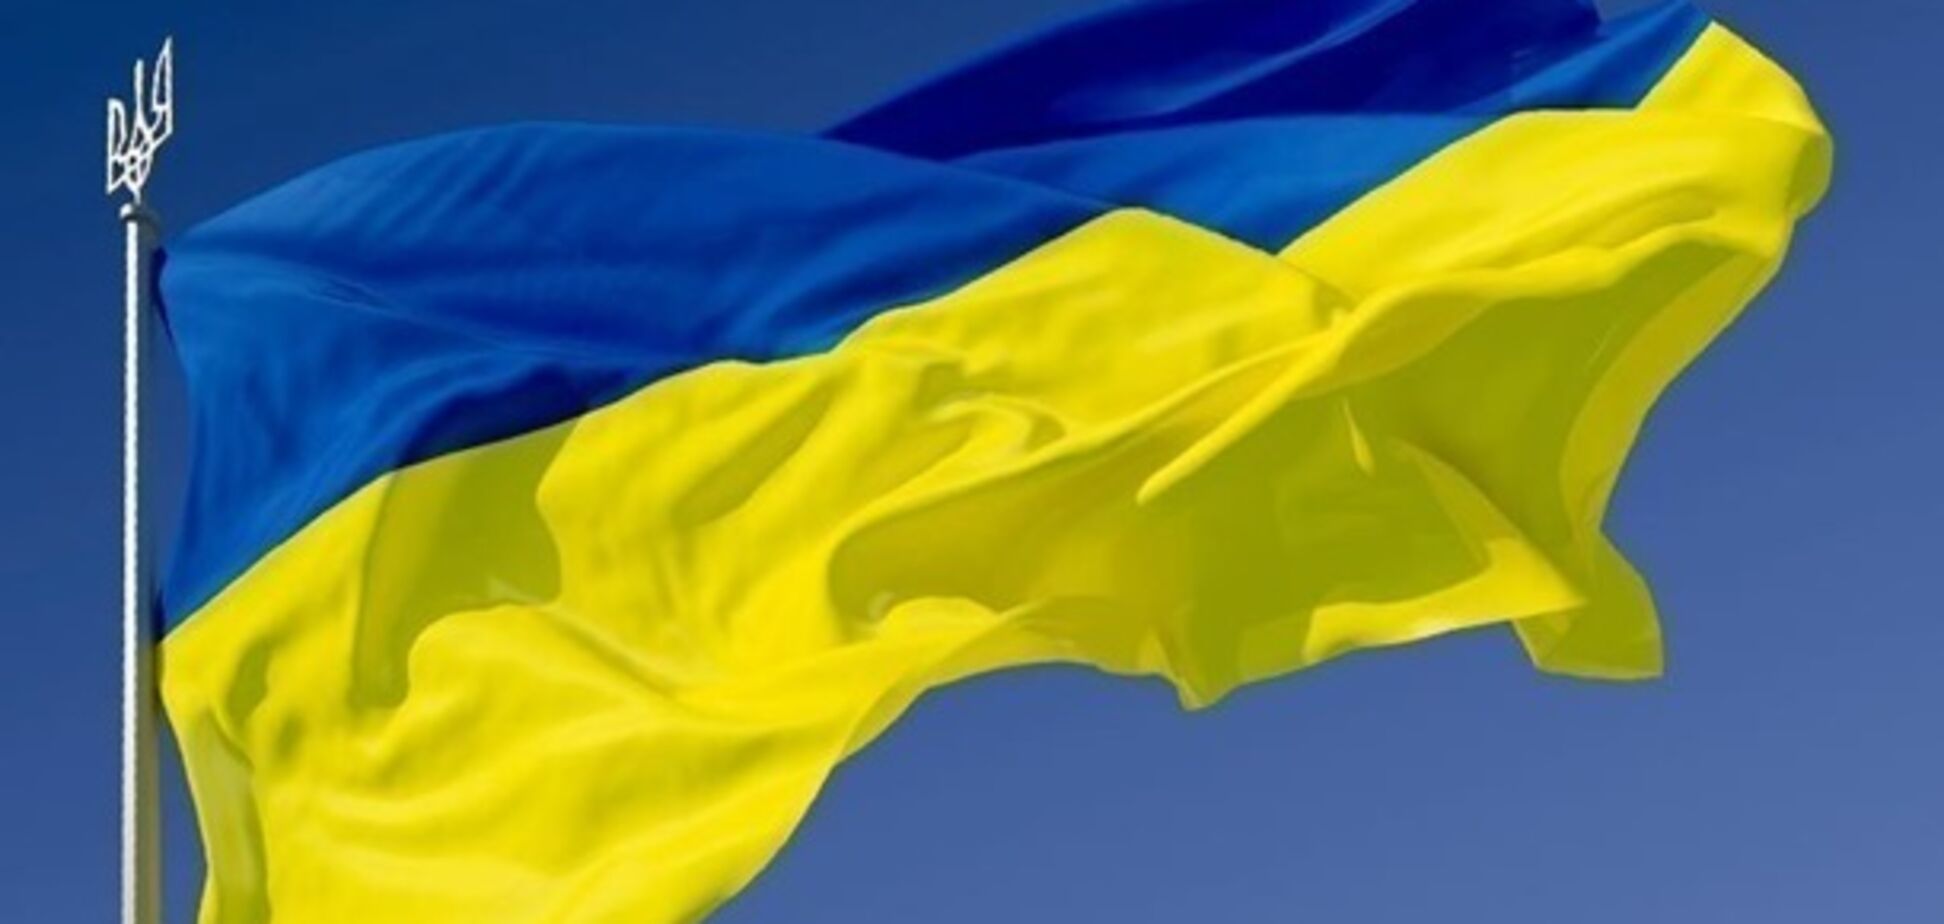 Население вымирает: опубликованы страшные данные о демографии в Украине